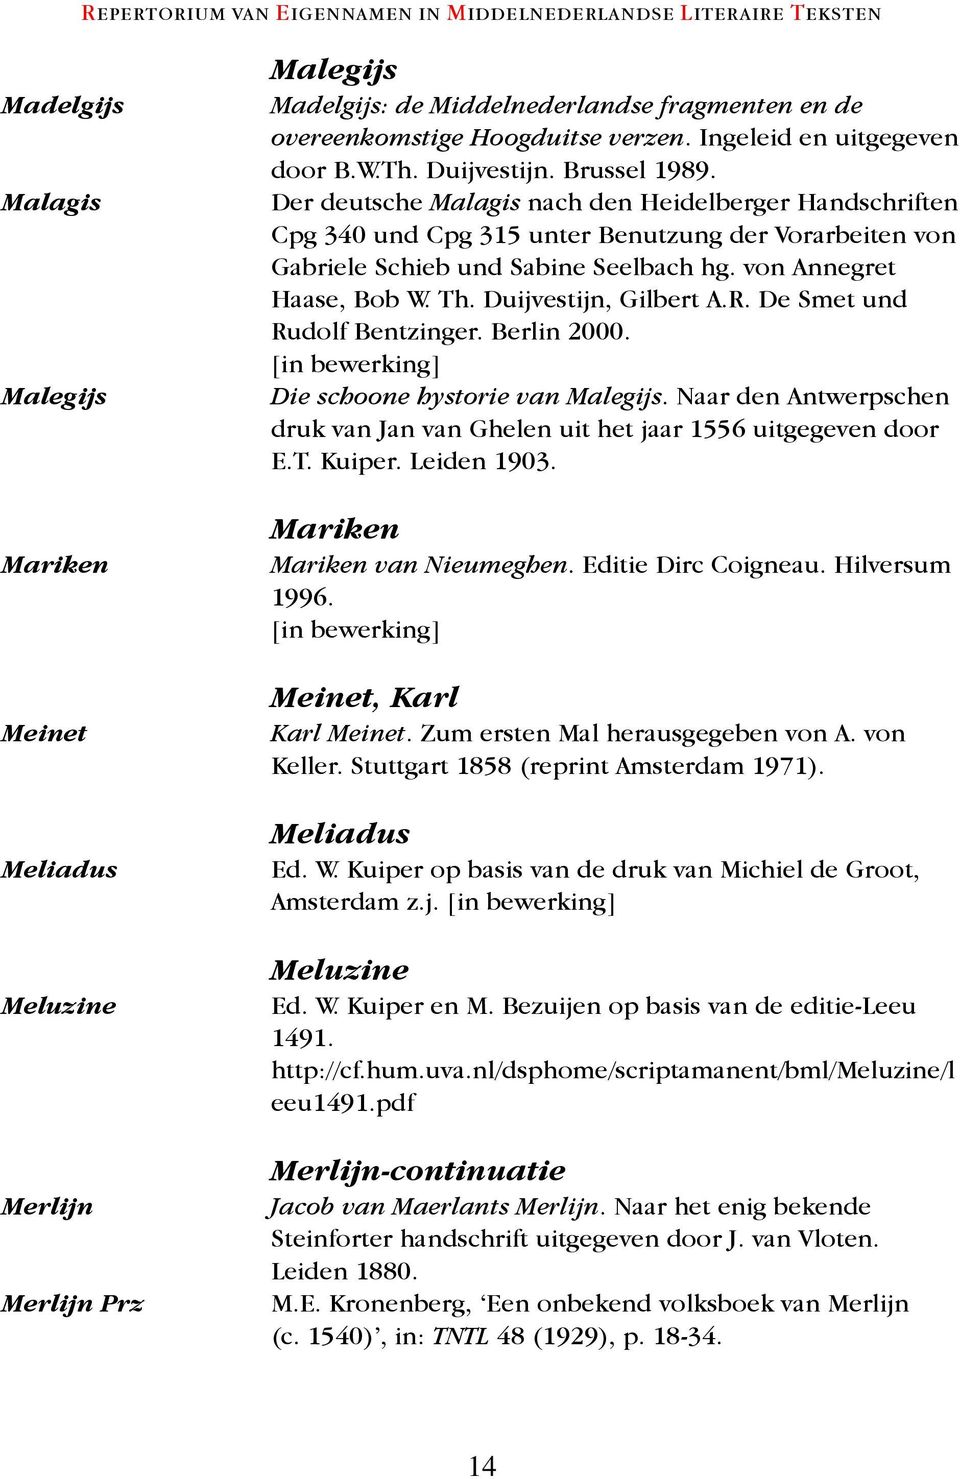 Der deutsche Malagis nach den Heidelberger Handschriften Cpg 340 und Cpg 315 unter Benutzung der Vorarbeiten von Gabriele Schieb und Sabine Seelbach hg. von Annegret Haase, Bob W. Th.